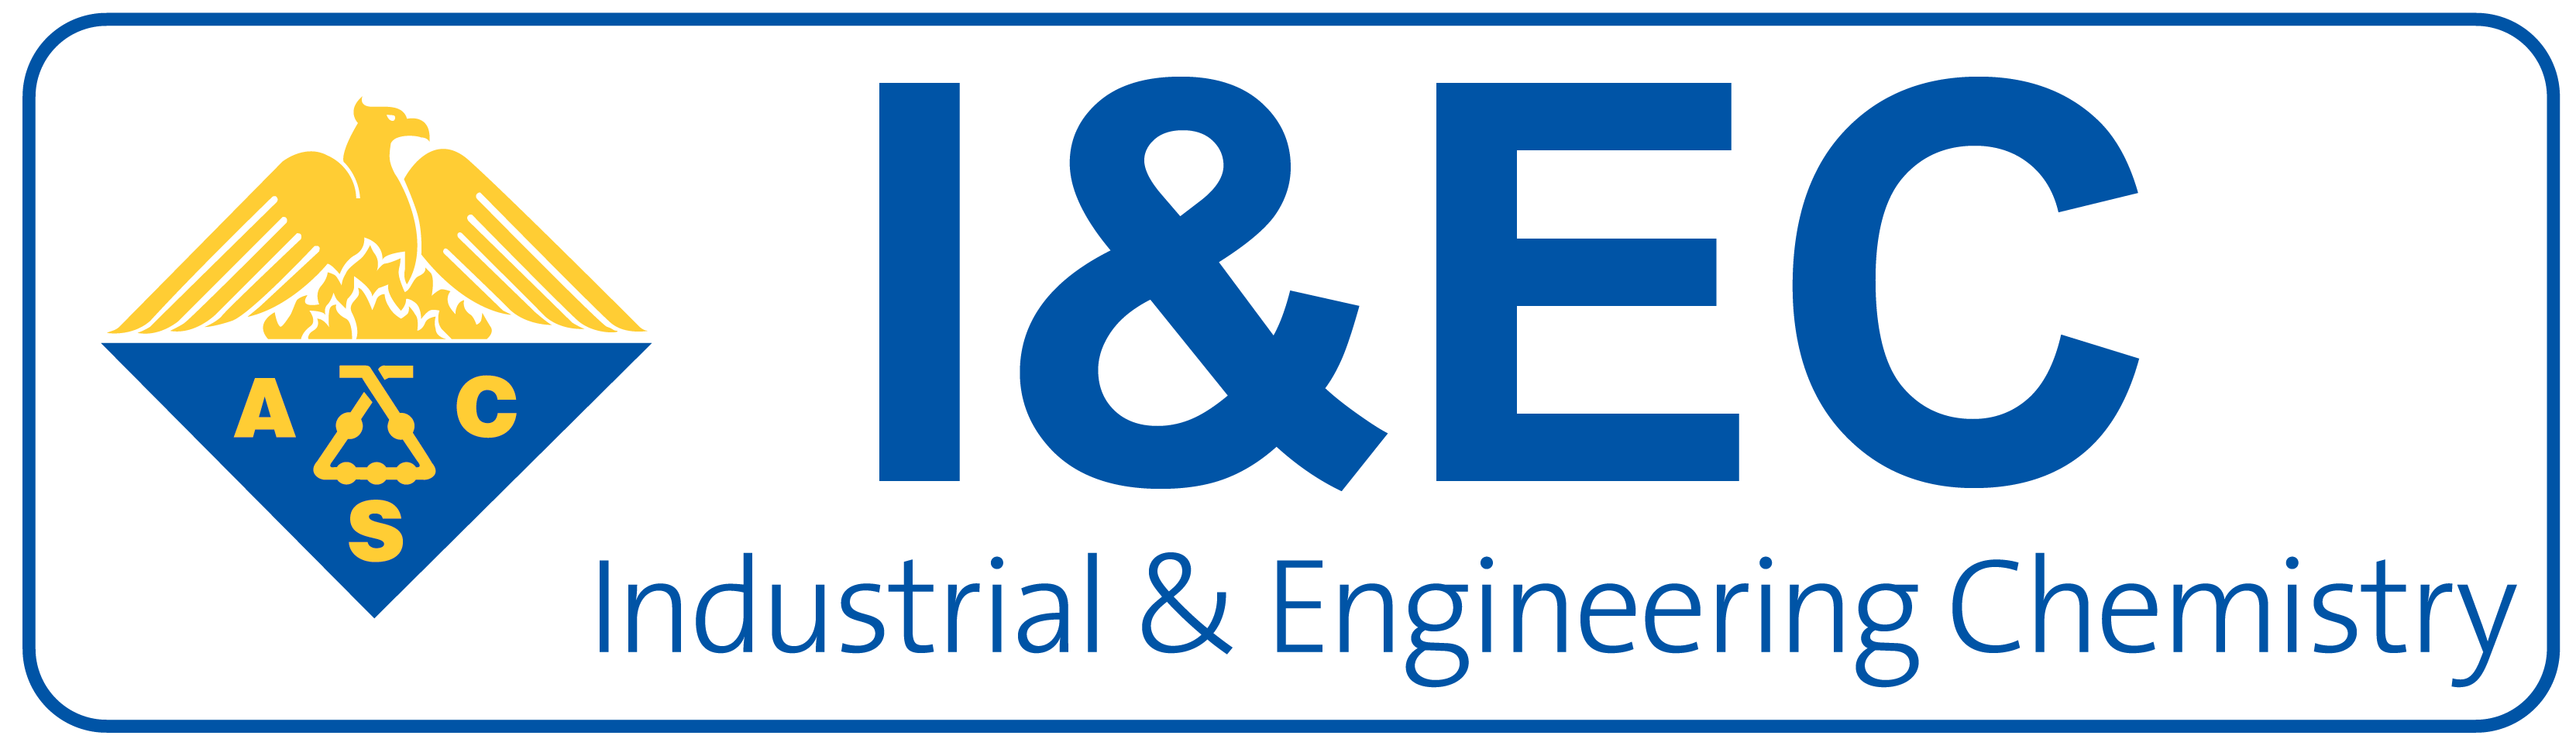 Industrial & Engineering Chemistry Logo